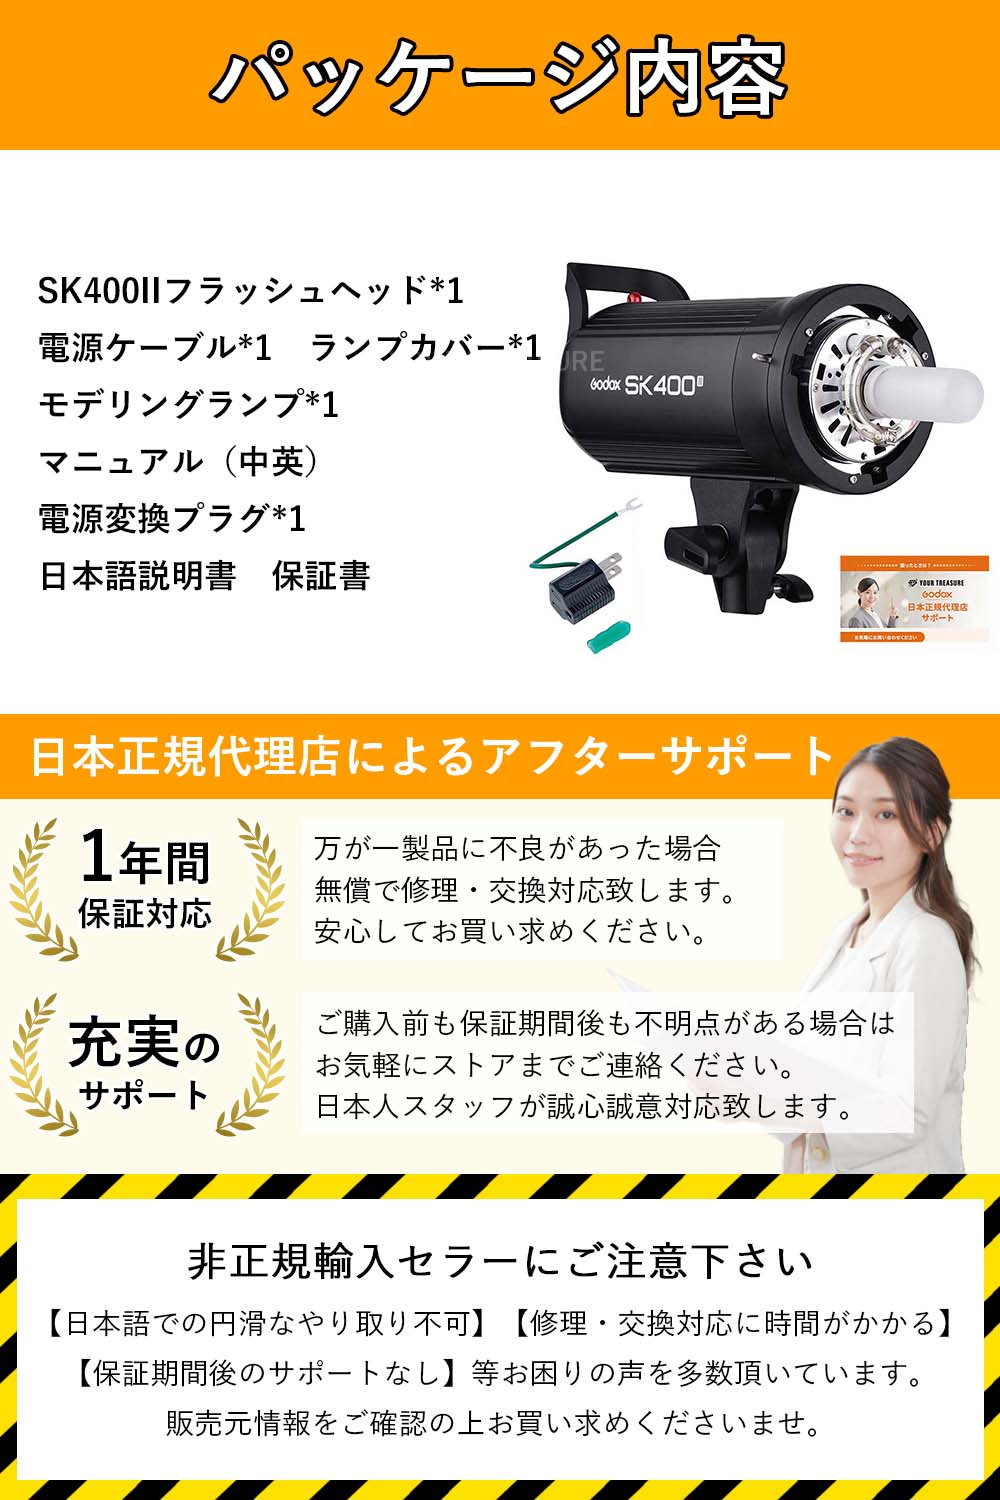 国内正規代理店] Godox SK400II スタジオストロボ フラッシュ [日本 ...